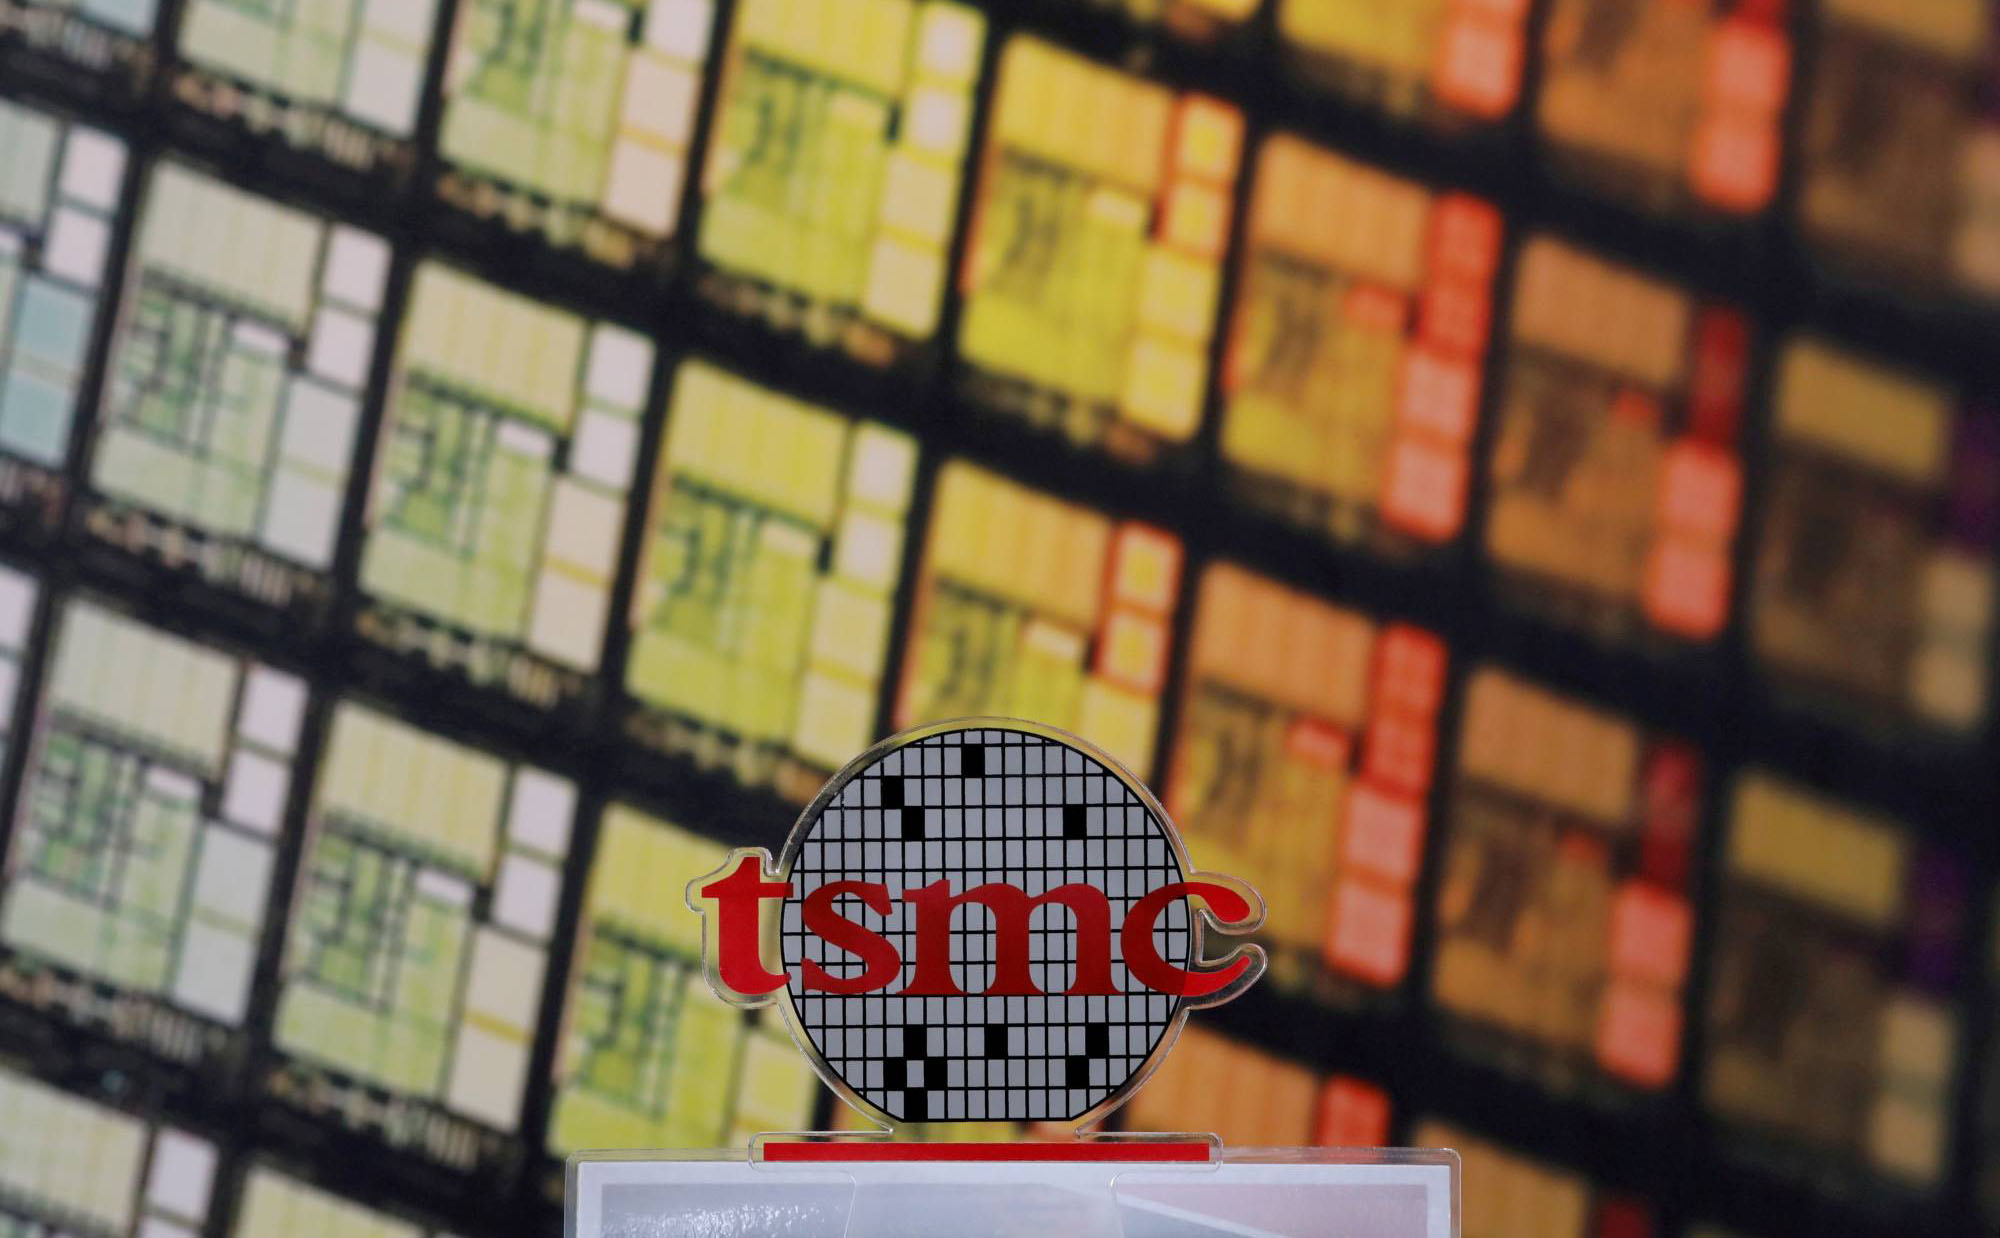 Qua mặt Intel và Samsung, TSMC là nhà sản xuất chip có doanh thu lớn nhất thế giới